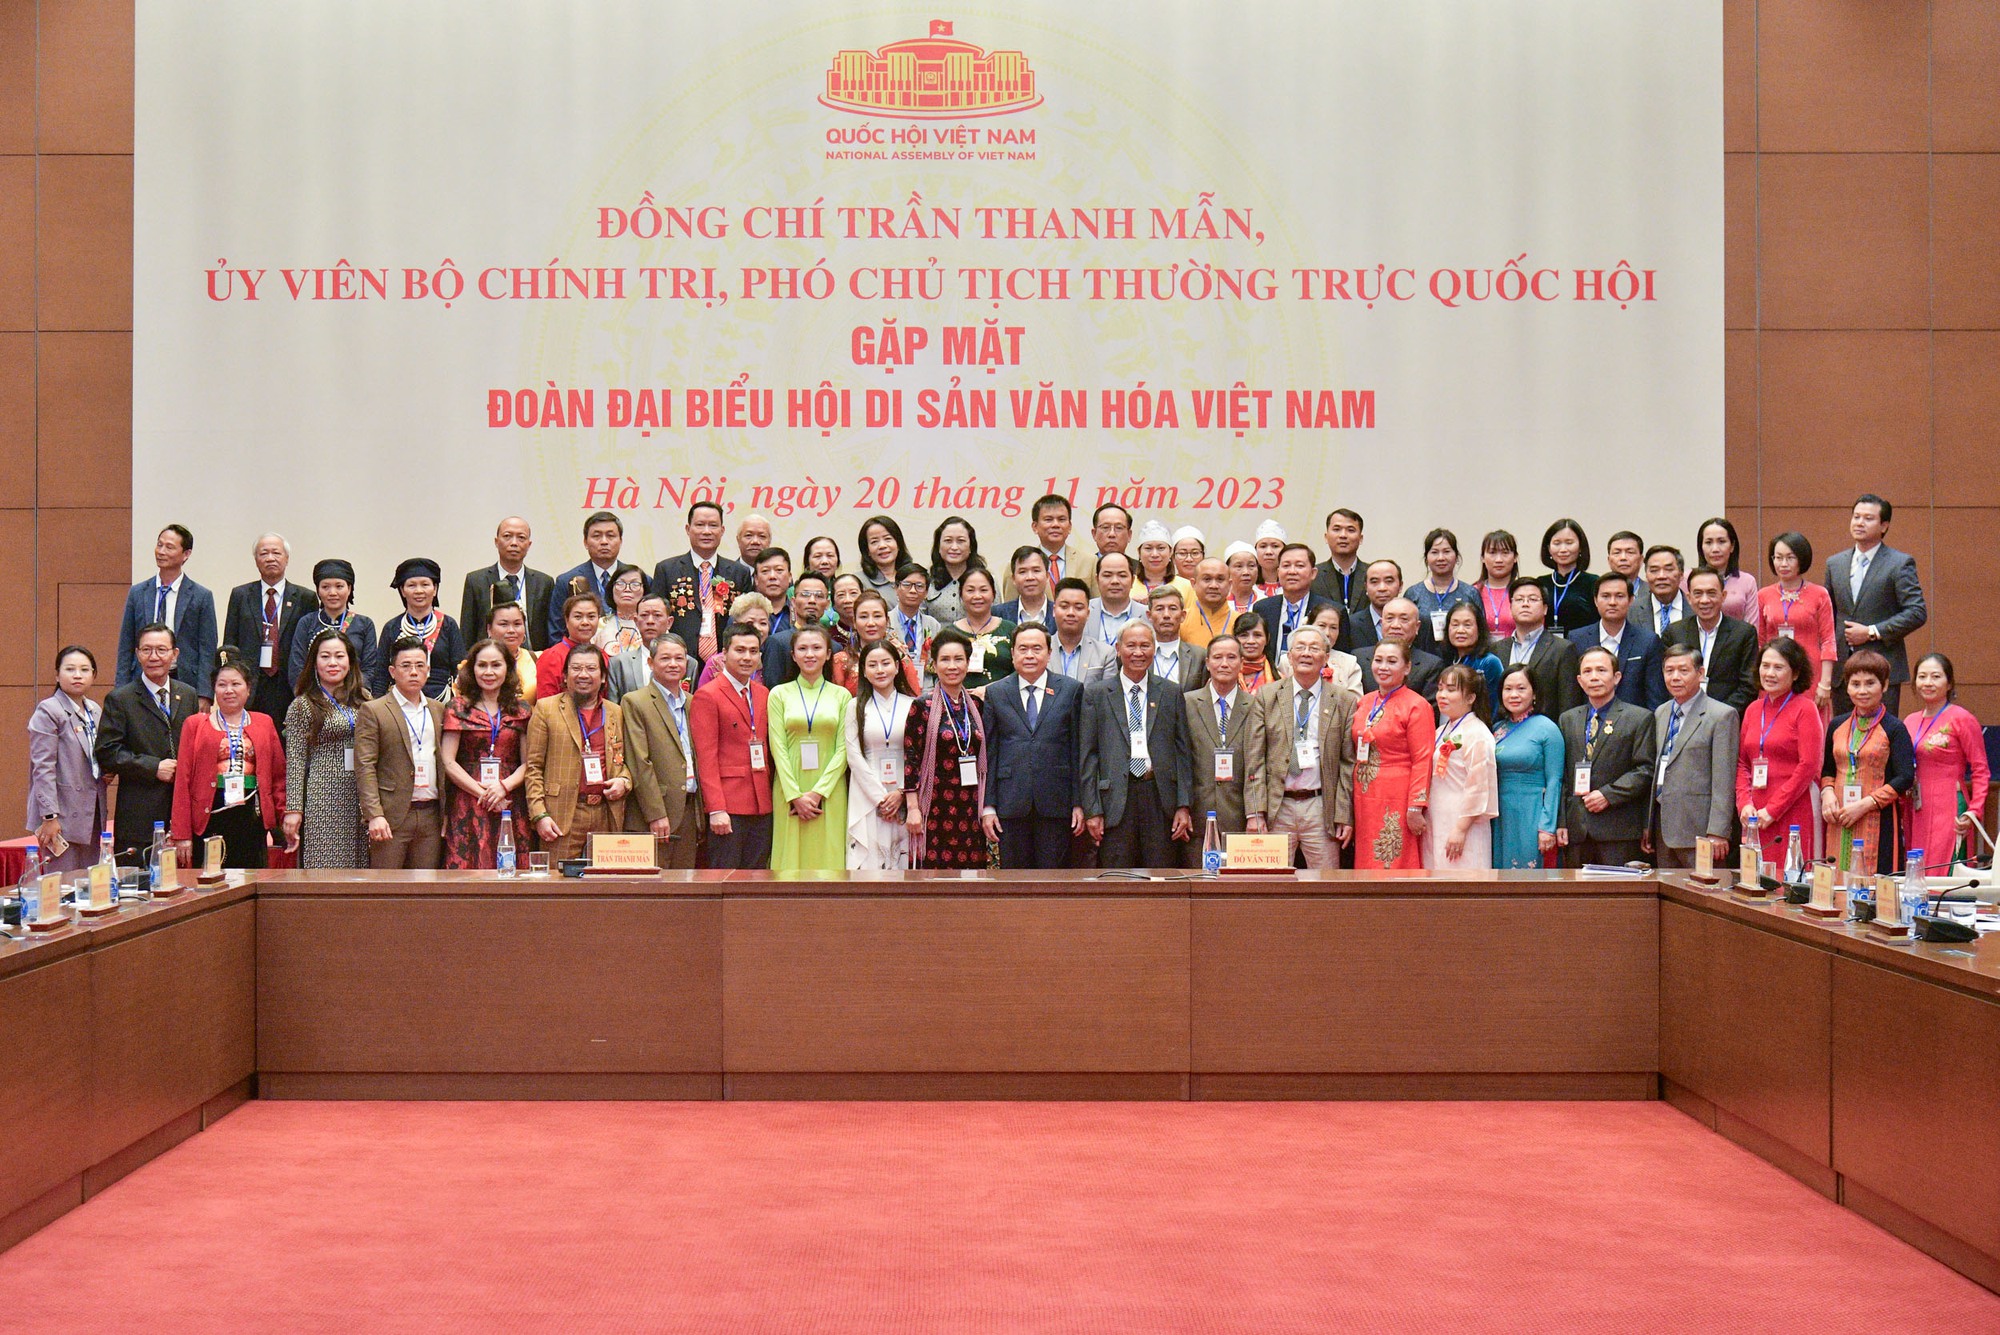 Phó Chủ tịch Thường trực Quốc hội: Bảo vệ, phát huy các giá trị di sản văn hóa Việt Nam là yêu cầu rất cấp thiết và quan trọng - Ảnh 4.